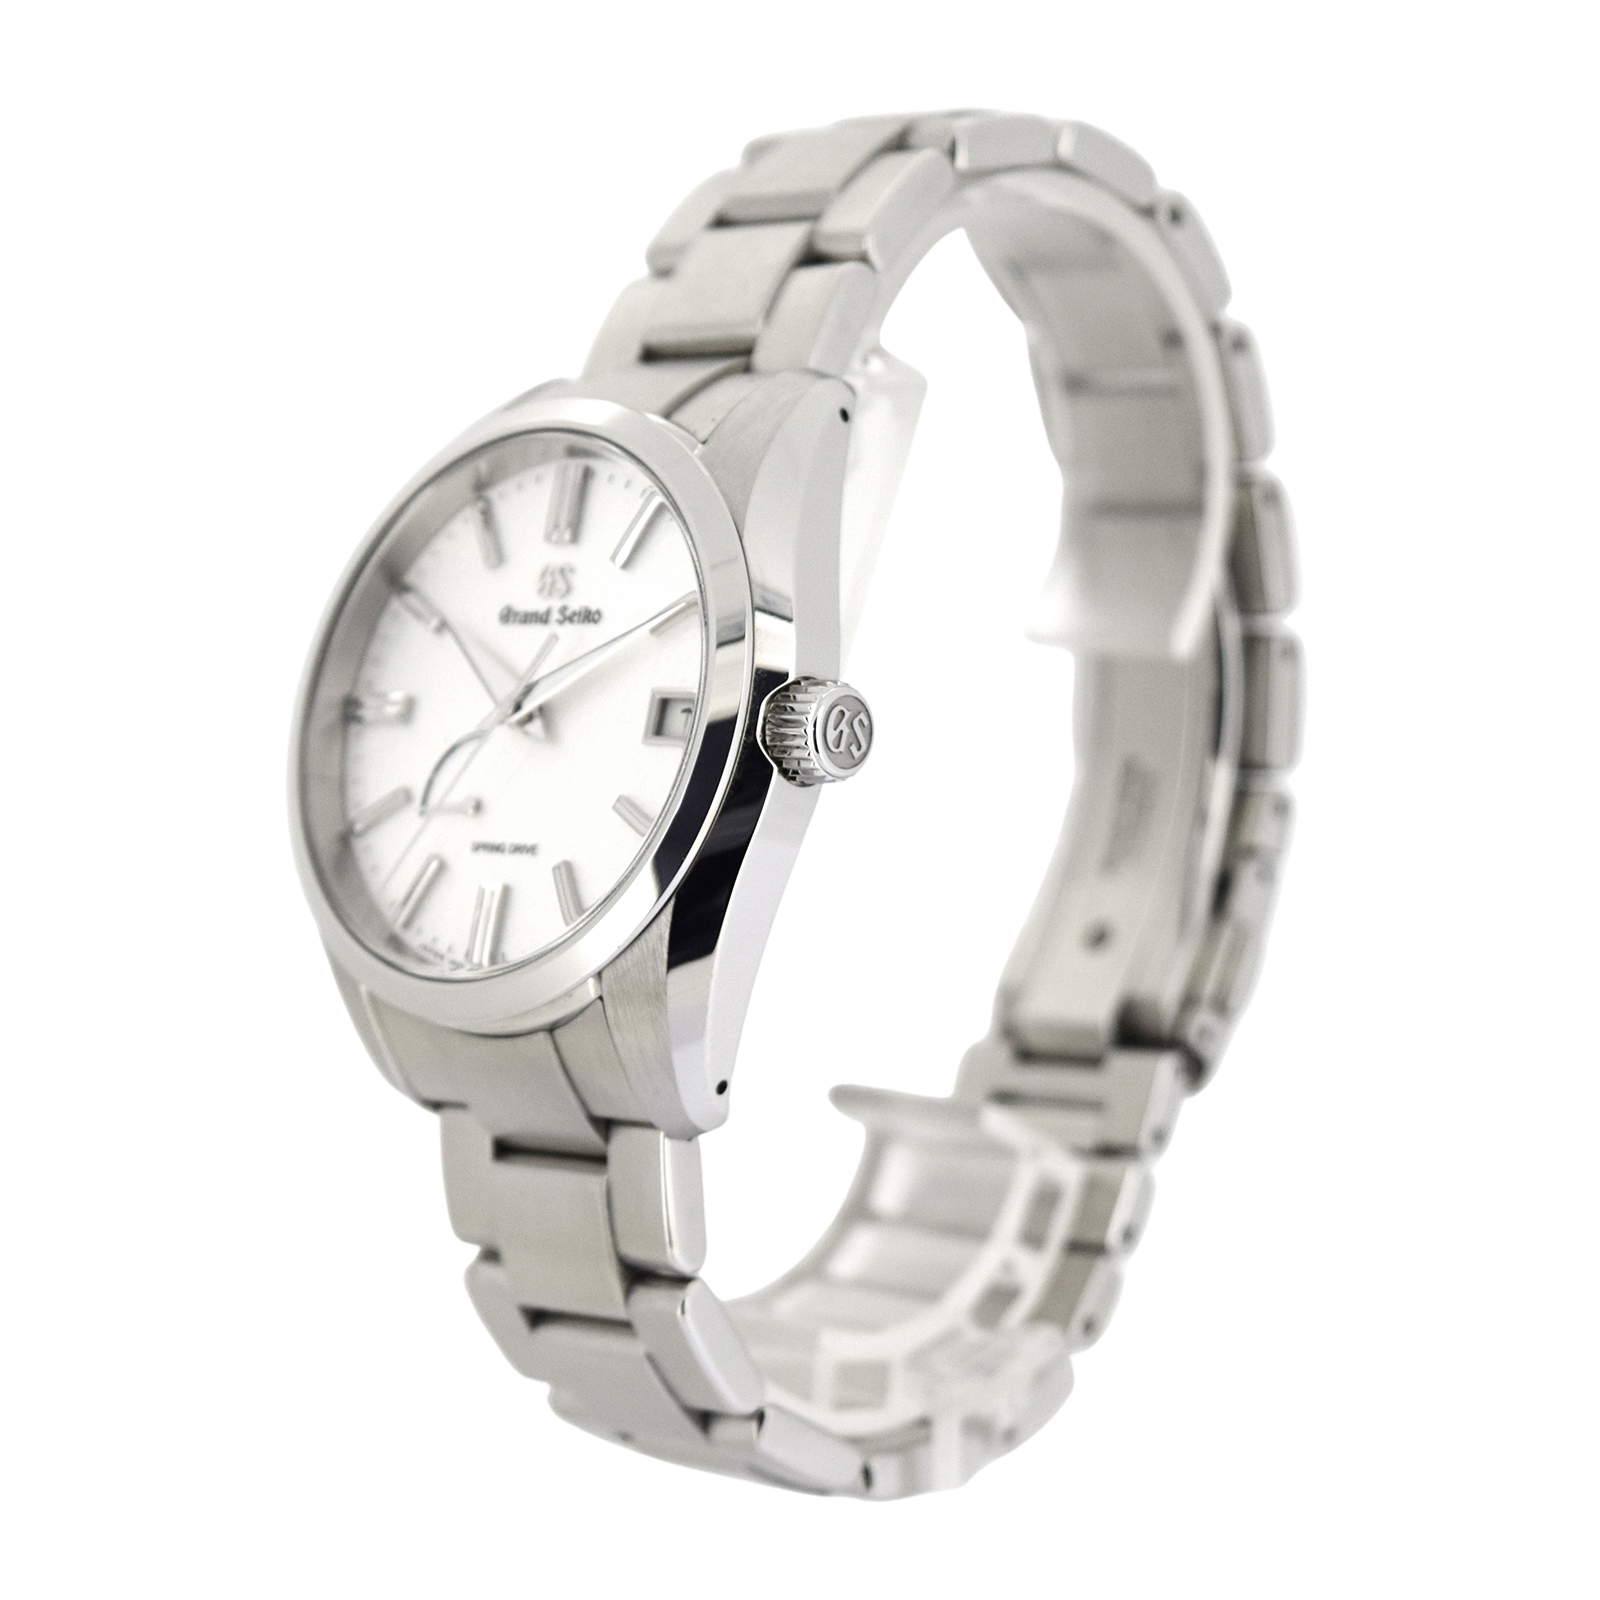 極美品 保証内 SEIKO セイコー  グランドセイコー ヘリテージコレクション  SBGA465 9R65-0DY0  メンズ 腕時計